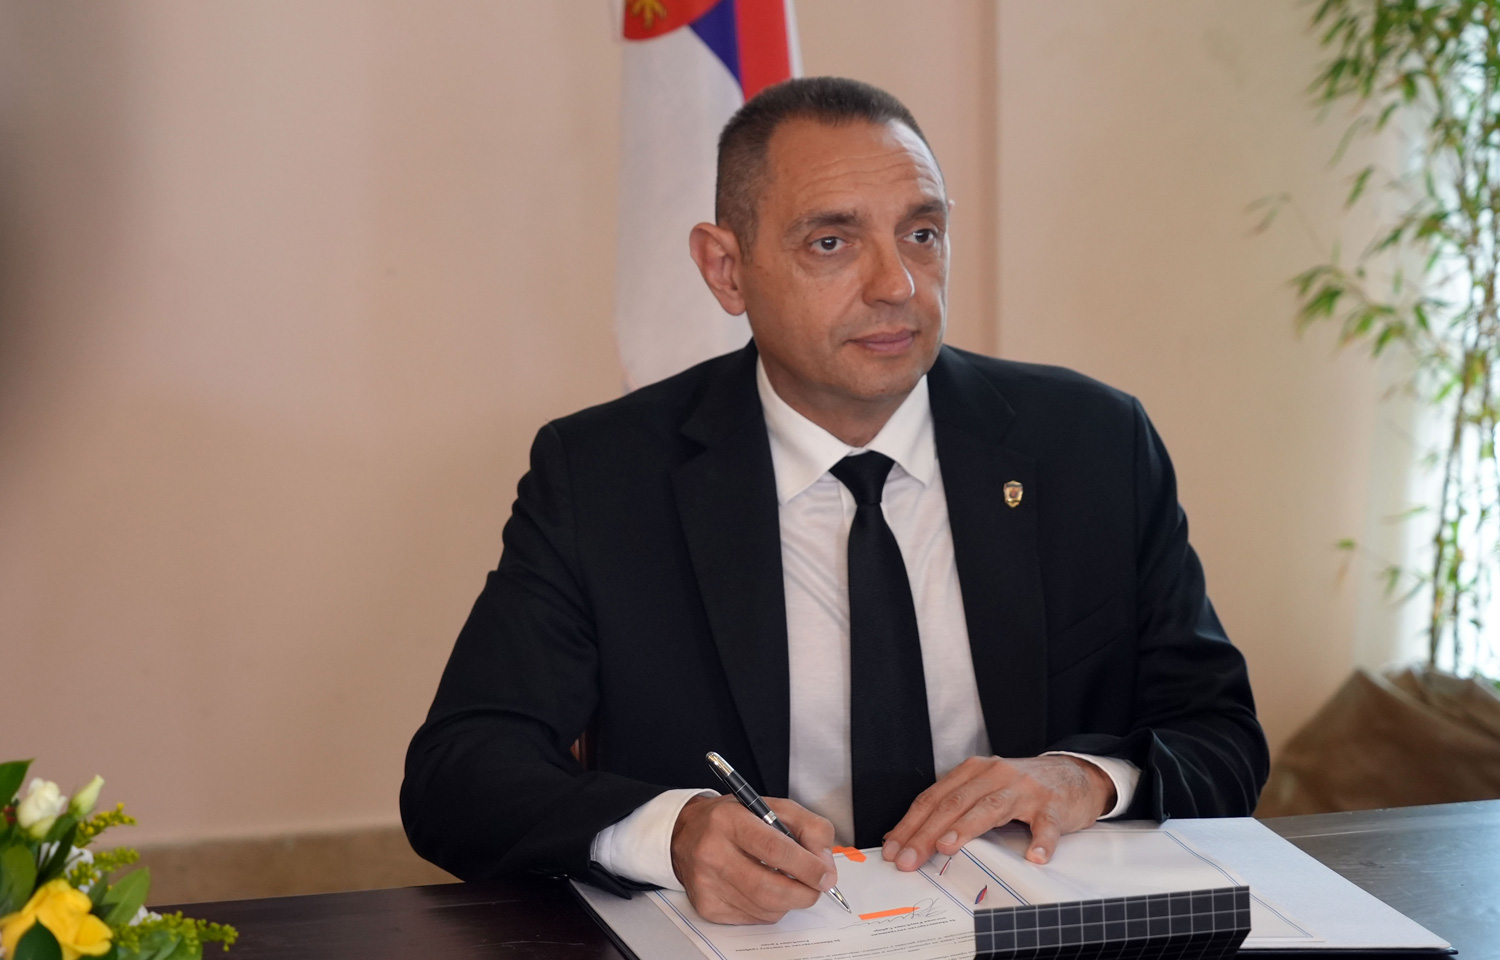 Министри Вулин и Теодорикакос потписали Споразум о заједничким патролама